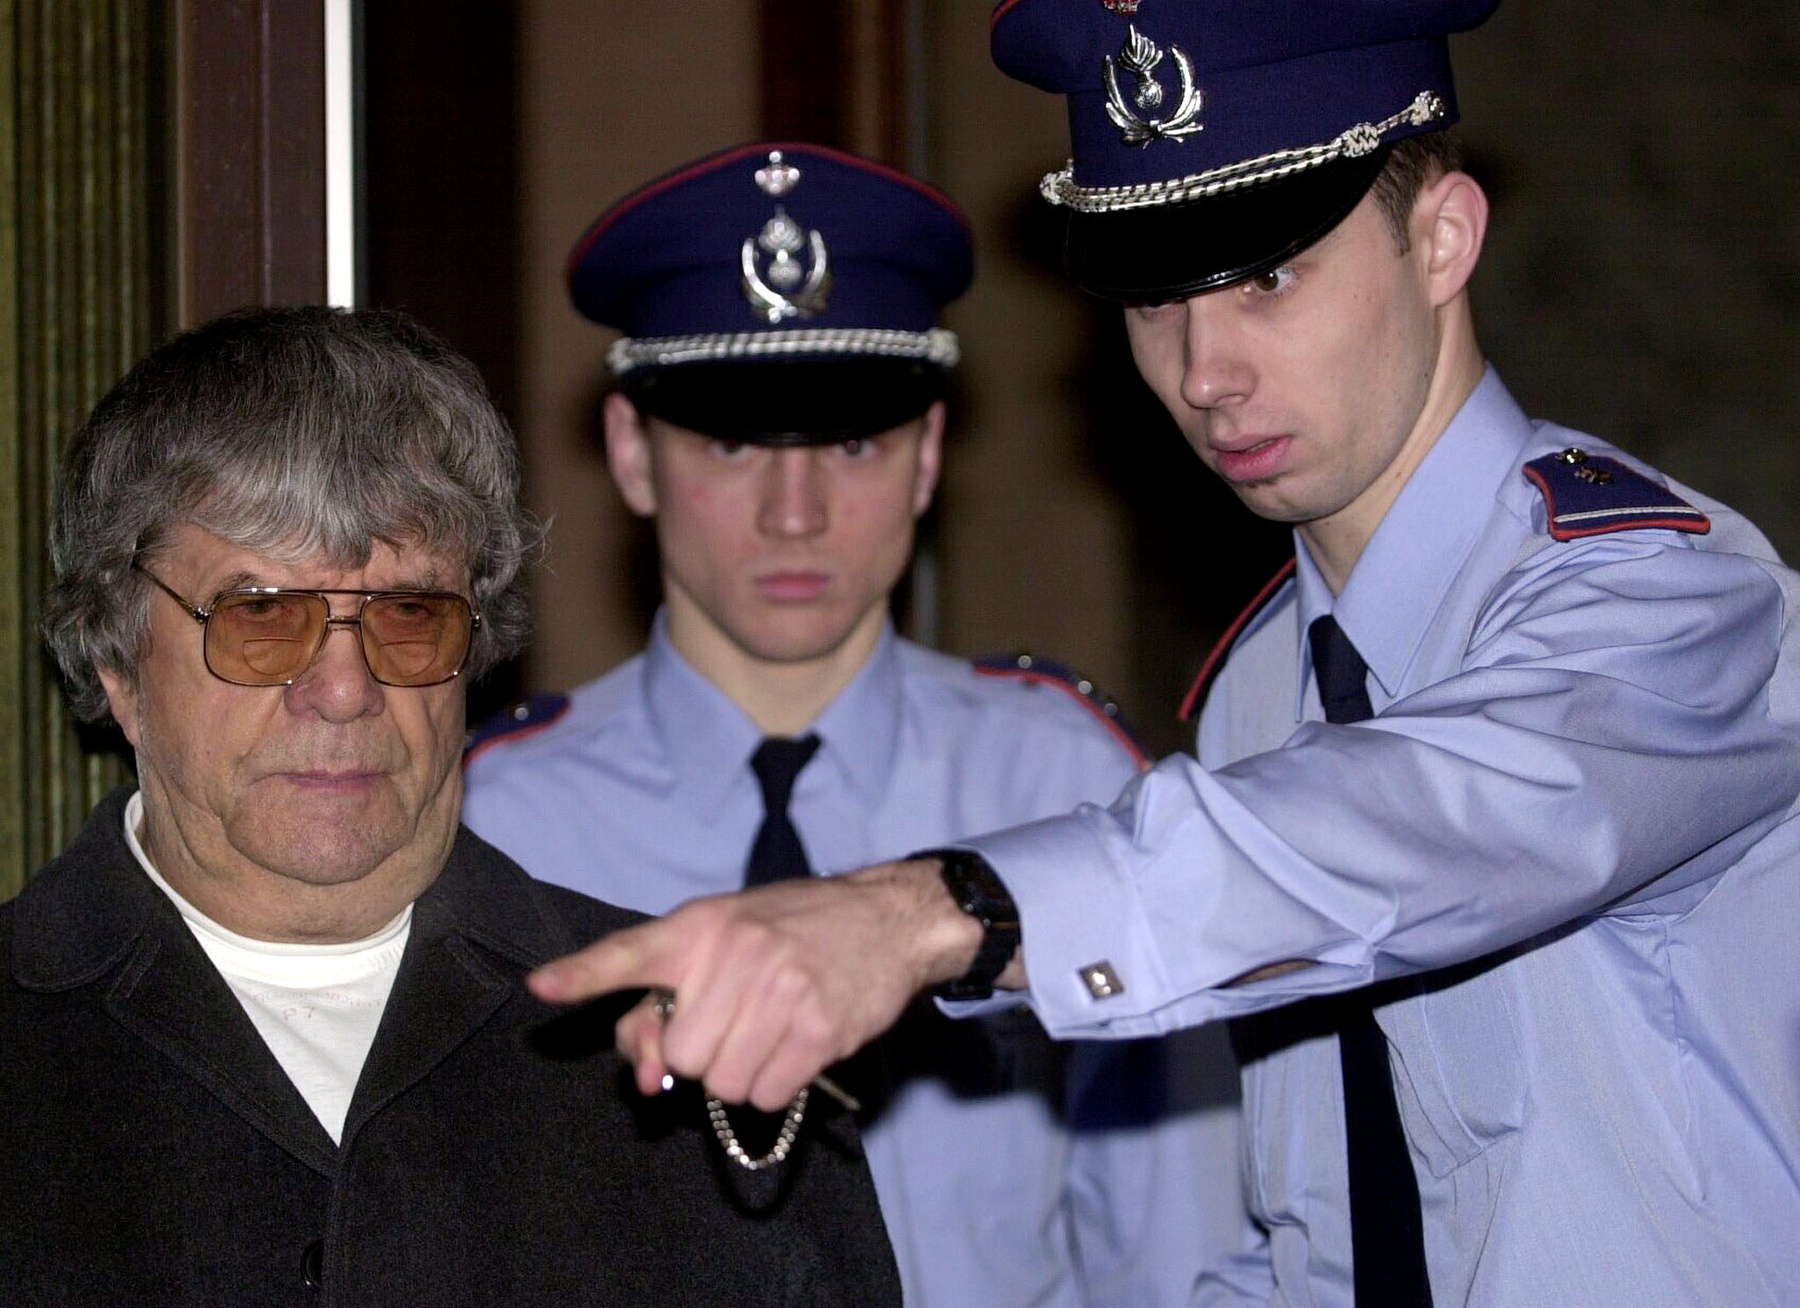 Pándy Ágnes takarja el az arcát egy autóba ülve 2010. június 14-én Brugge-ben, miután 13 év után kiengedték a börtönből és engedélyezték számára, hogy egy apácazárdába költözzön be.